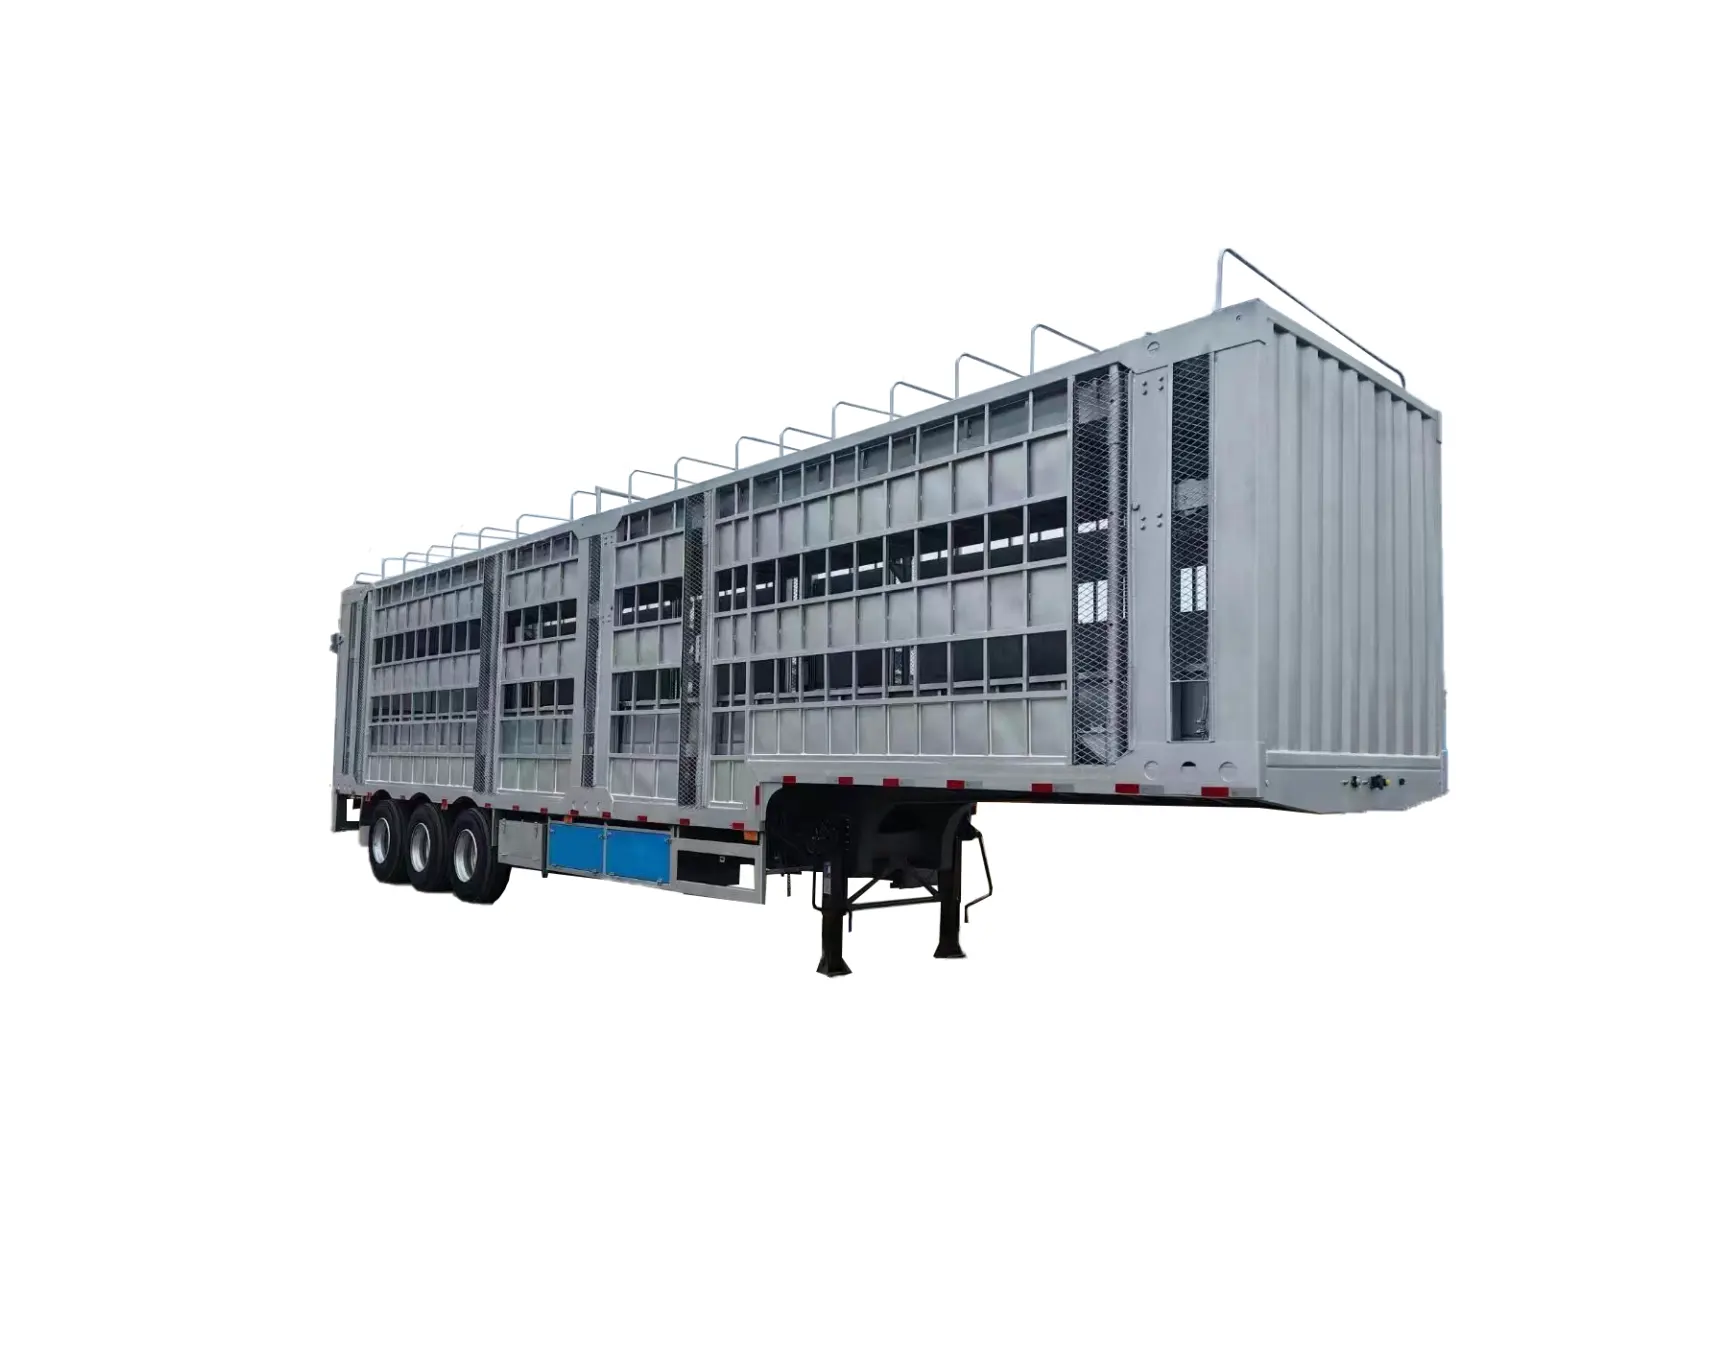 Nuevo tipo de producto popular ganado transporte de aves de corral camión remolque camión semirremolque